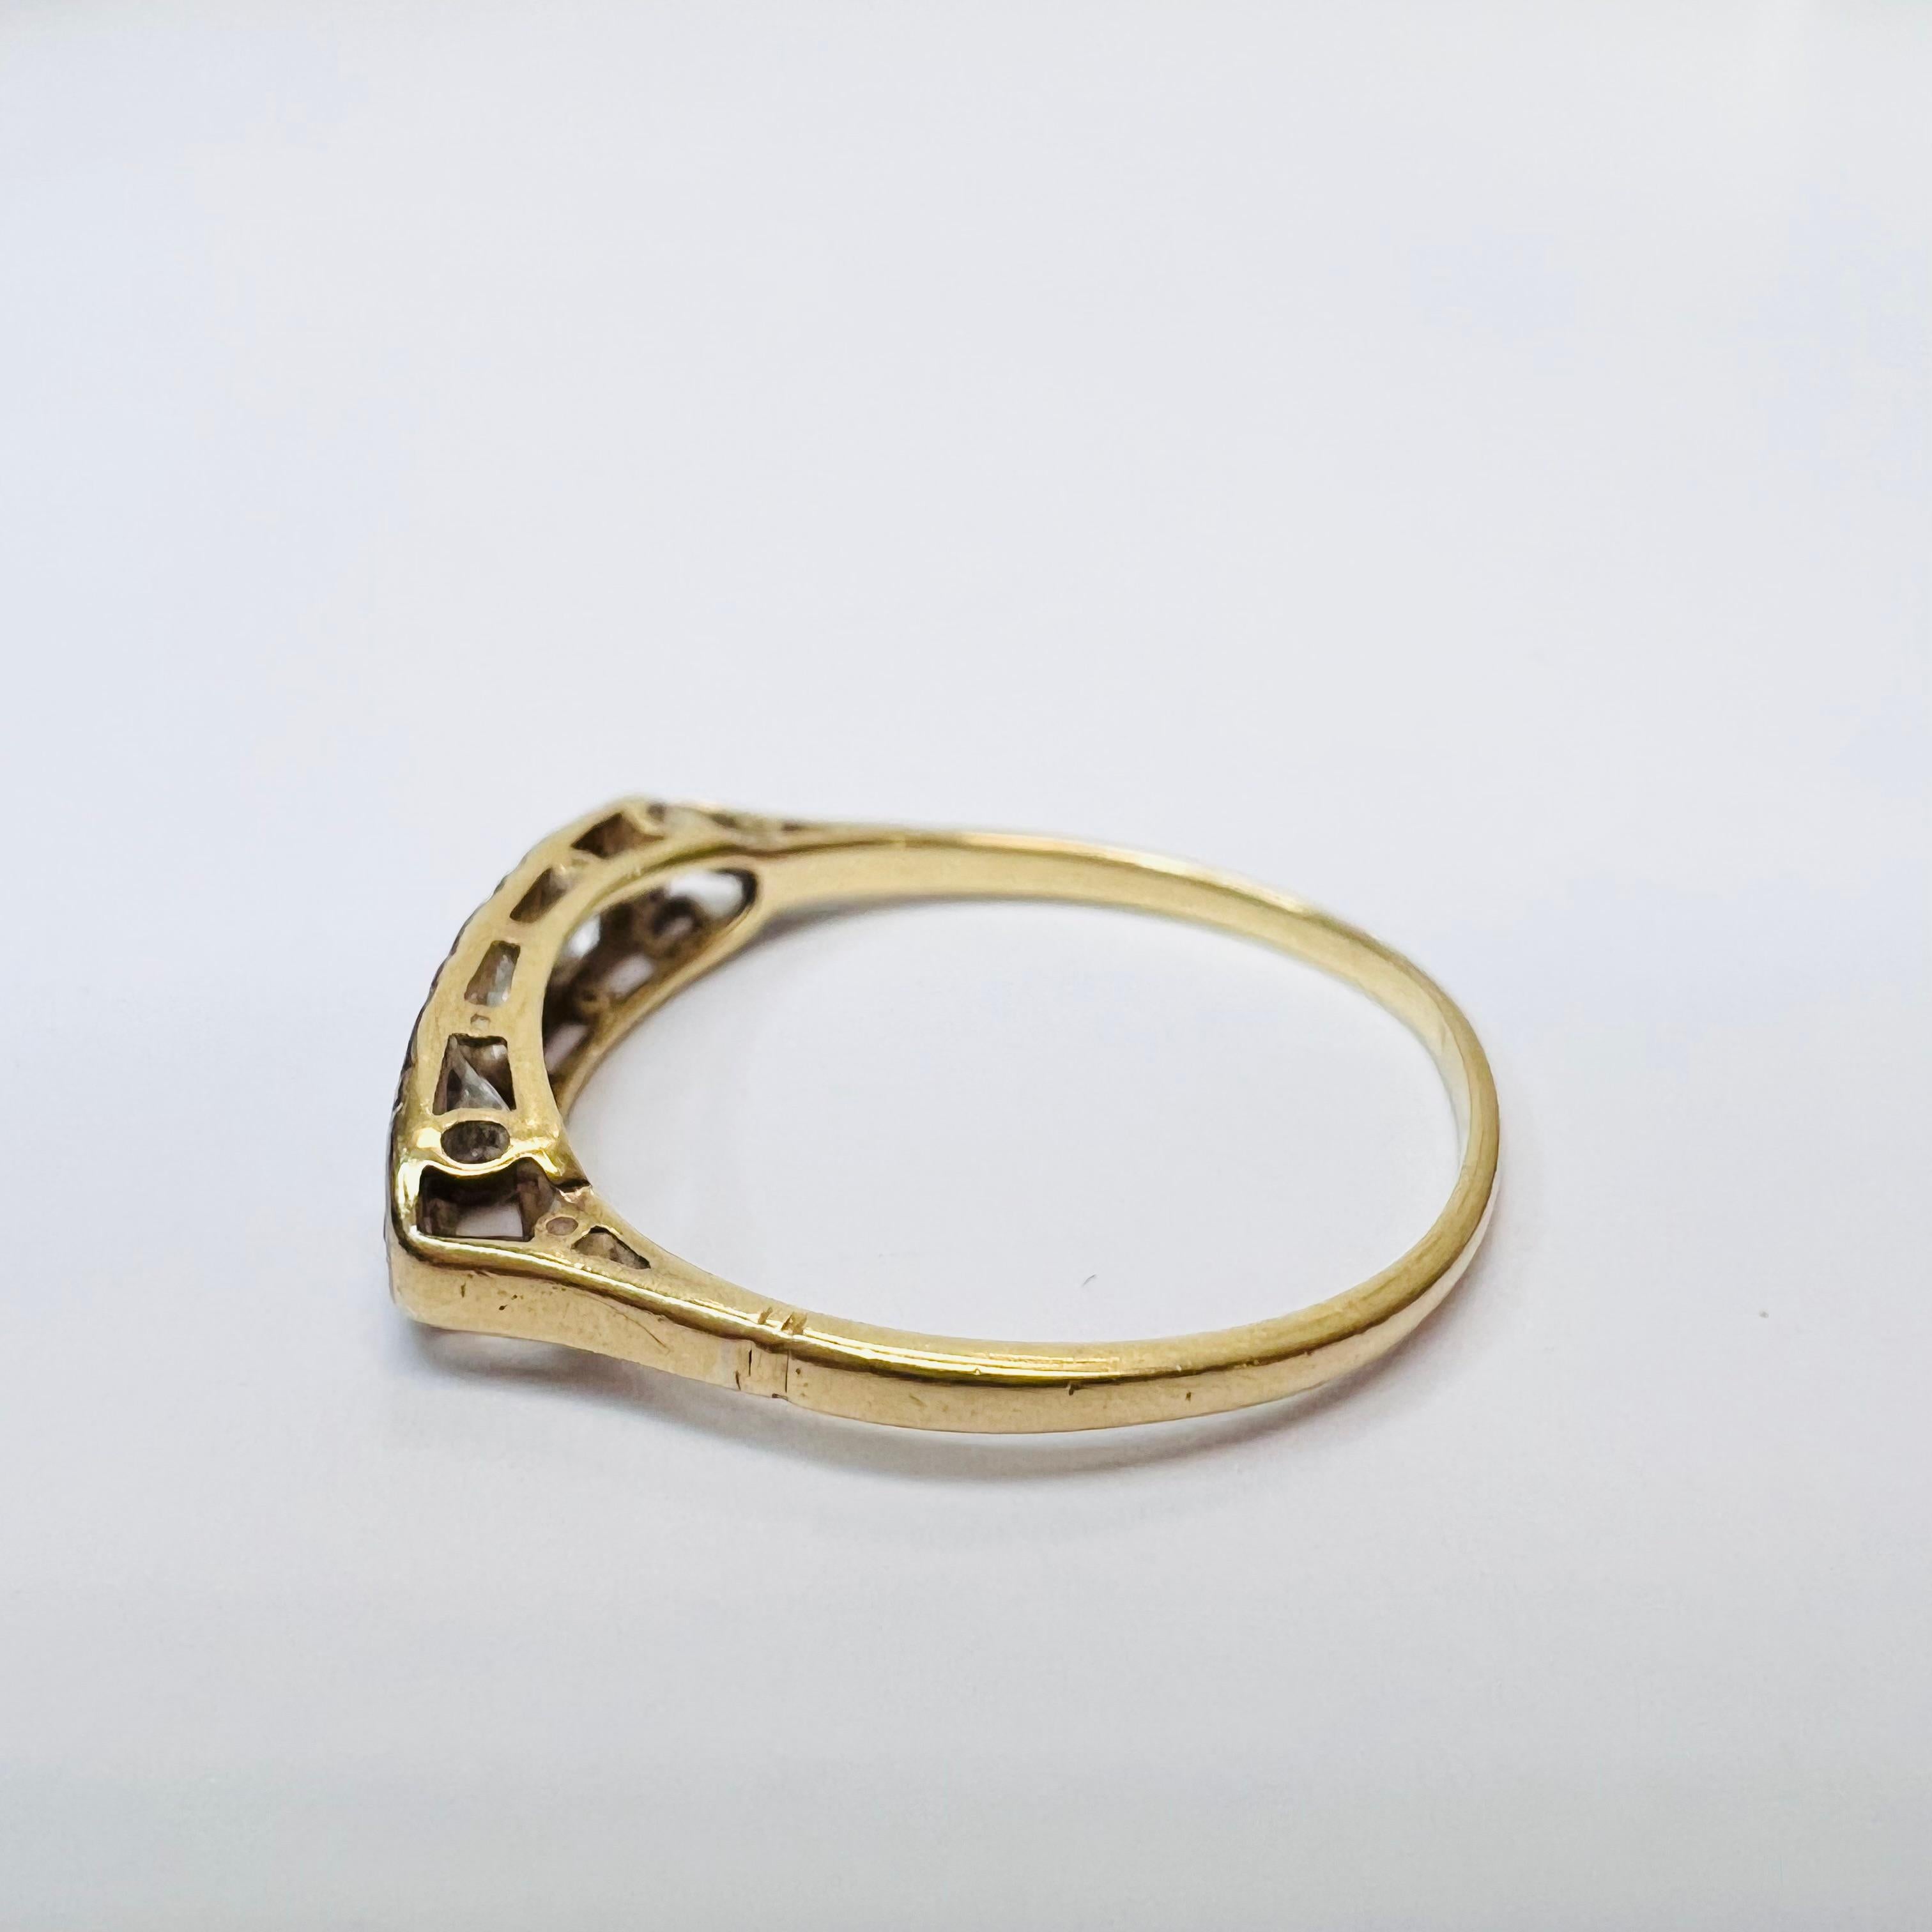 Vorstellen einer,

Ein antiker Ring mit eingefassten Diamanten auf einem Ringband aus Platin und 18 Karat Gelbgold.

Die Diamanten sind natürliche und in der Erde abgebaute Steine.

Die Diamanten sind etwa .45CTW

Der Ring ist 17x4mm breit, 3.5mm